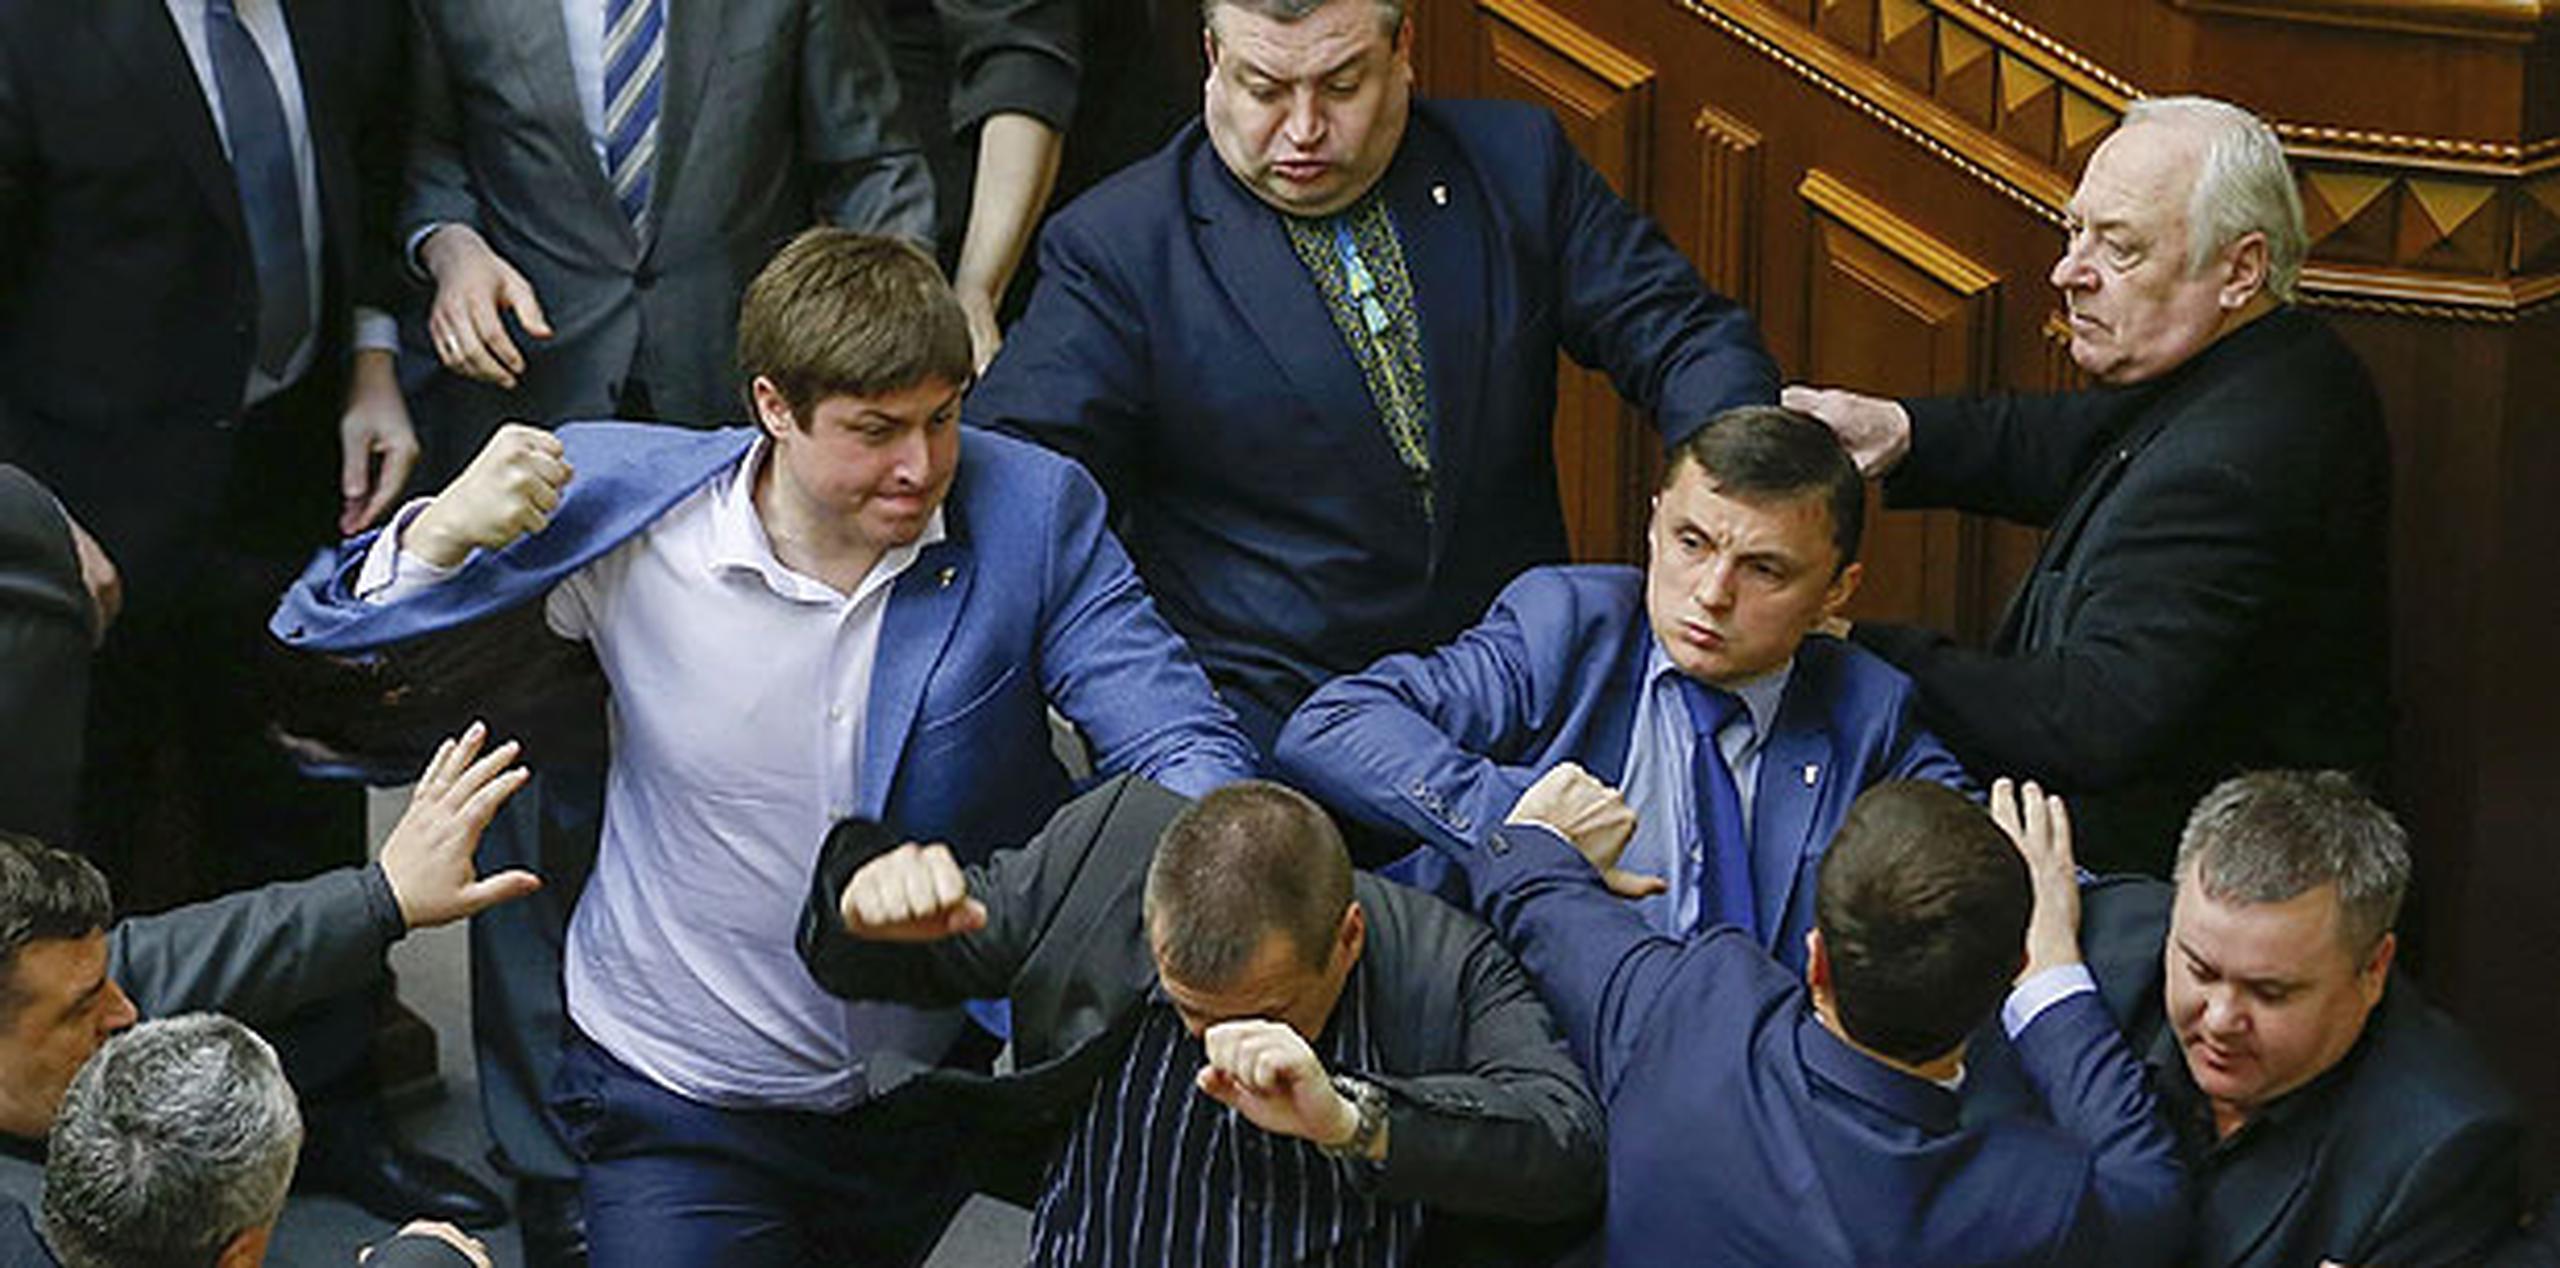 Los nacionalistas expulsaron de la tribuna a empellones a Simonenko, en cuya defensa se levantaron los diputados del grupo parlamentario comunista. (EFE)
